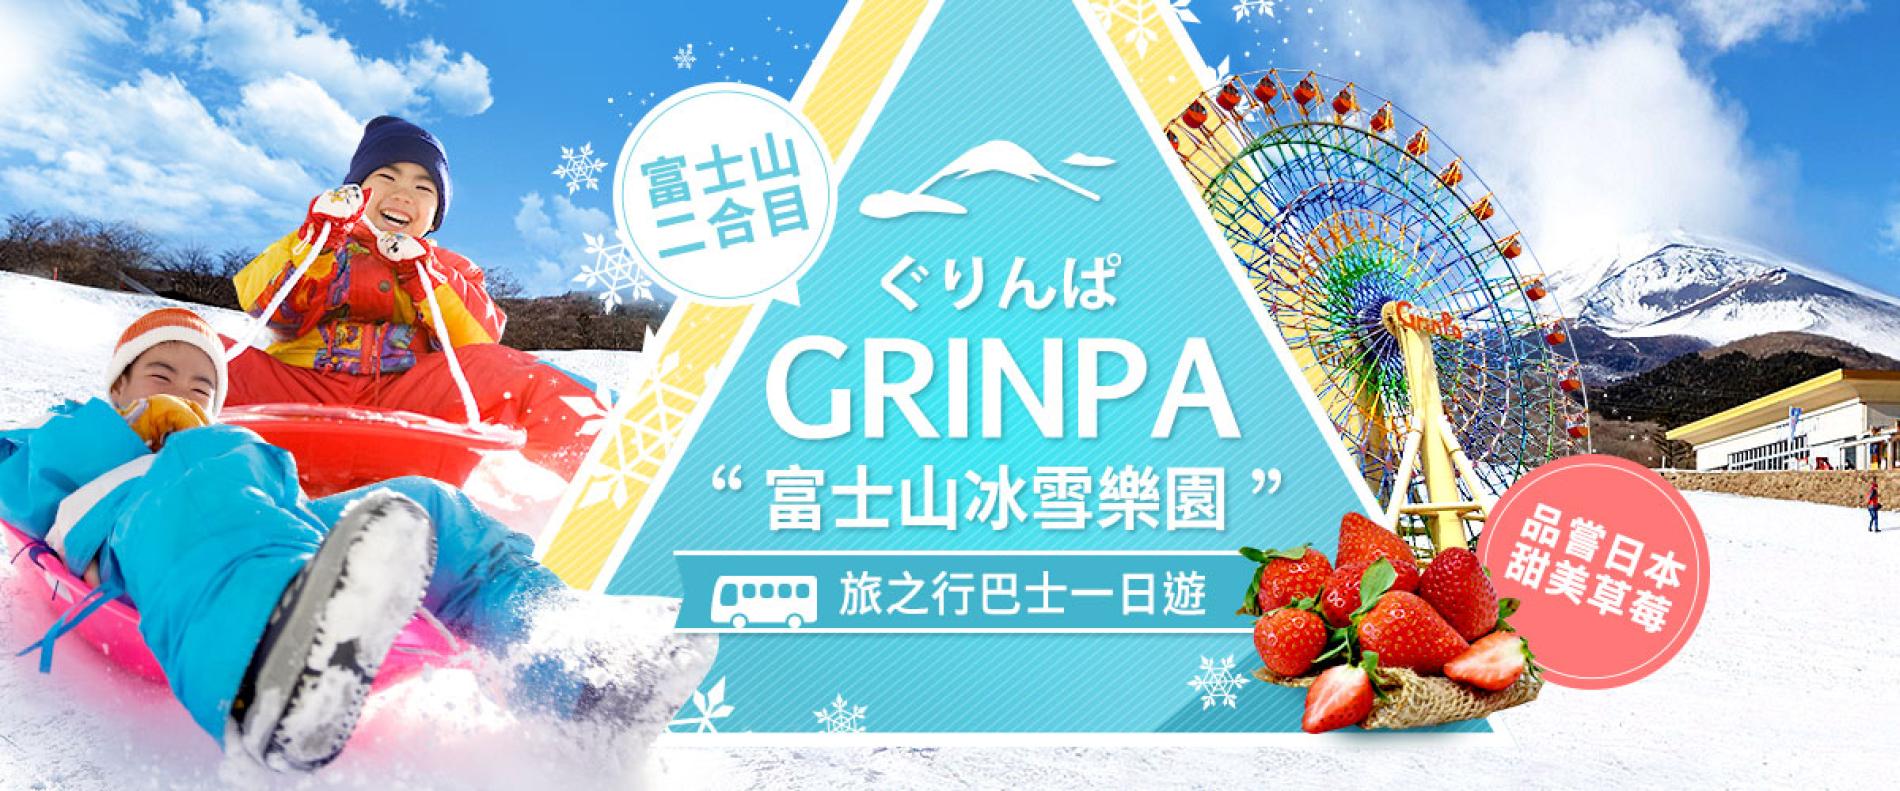 Tour chơi tuyết một ngày trên núi Phú Sĩ] Công viên tuyết GRINPA, Công viên trái cây Izu, Lễ hội chiếu sáng Toki no Sui - KKday